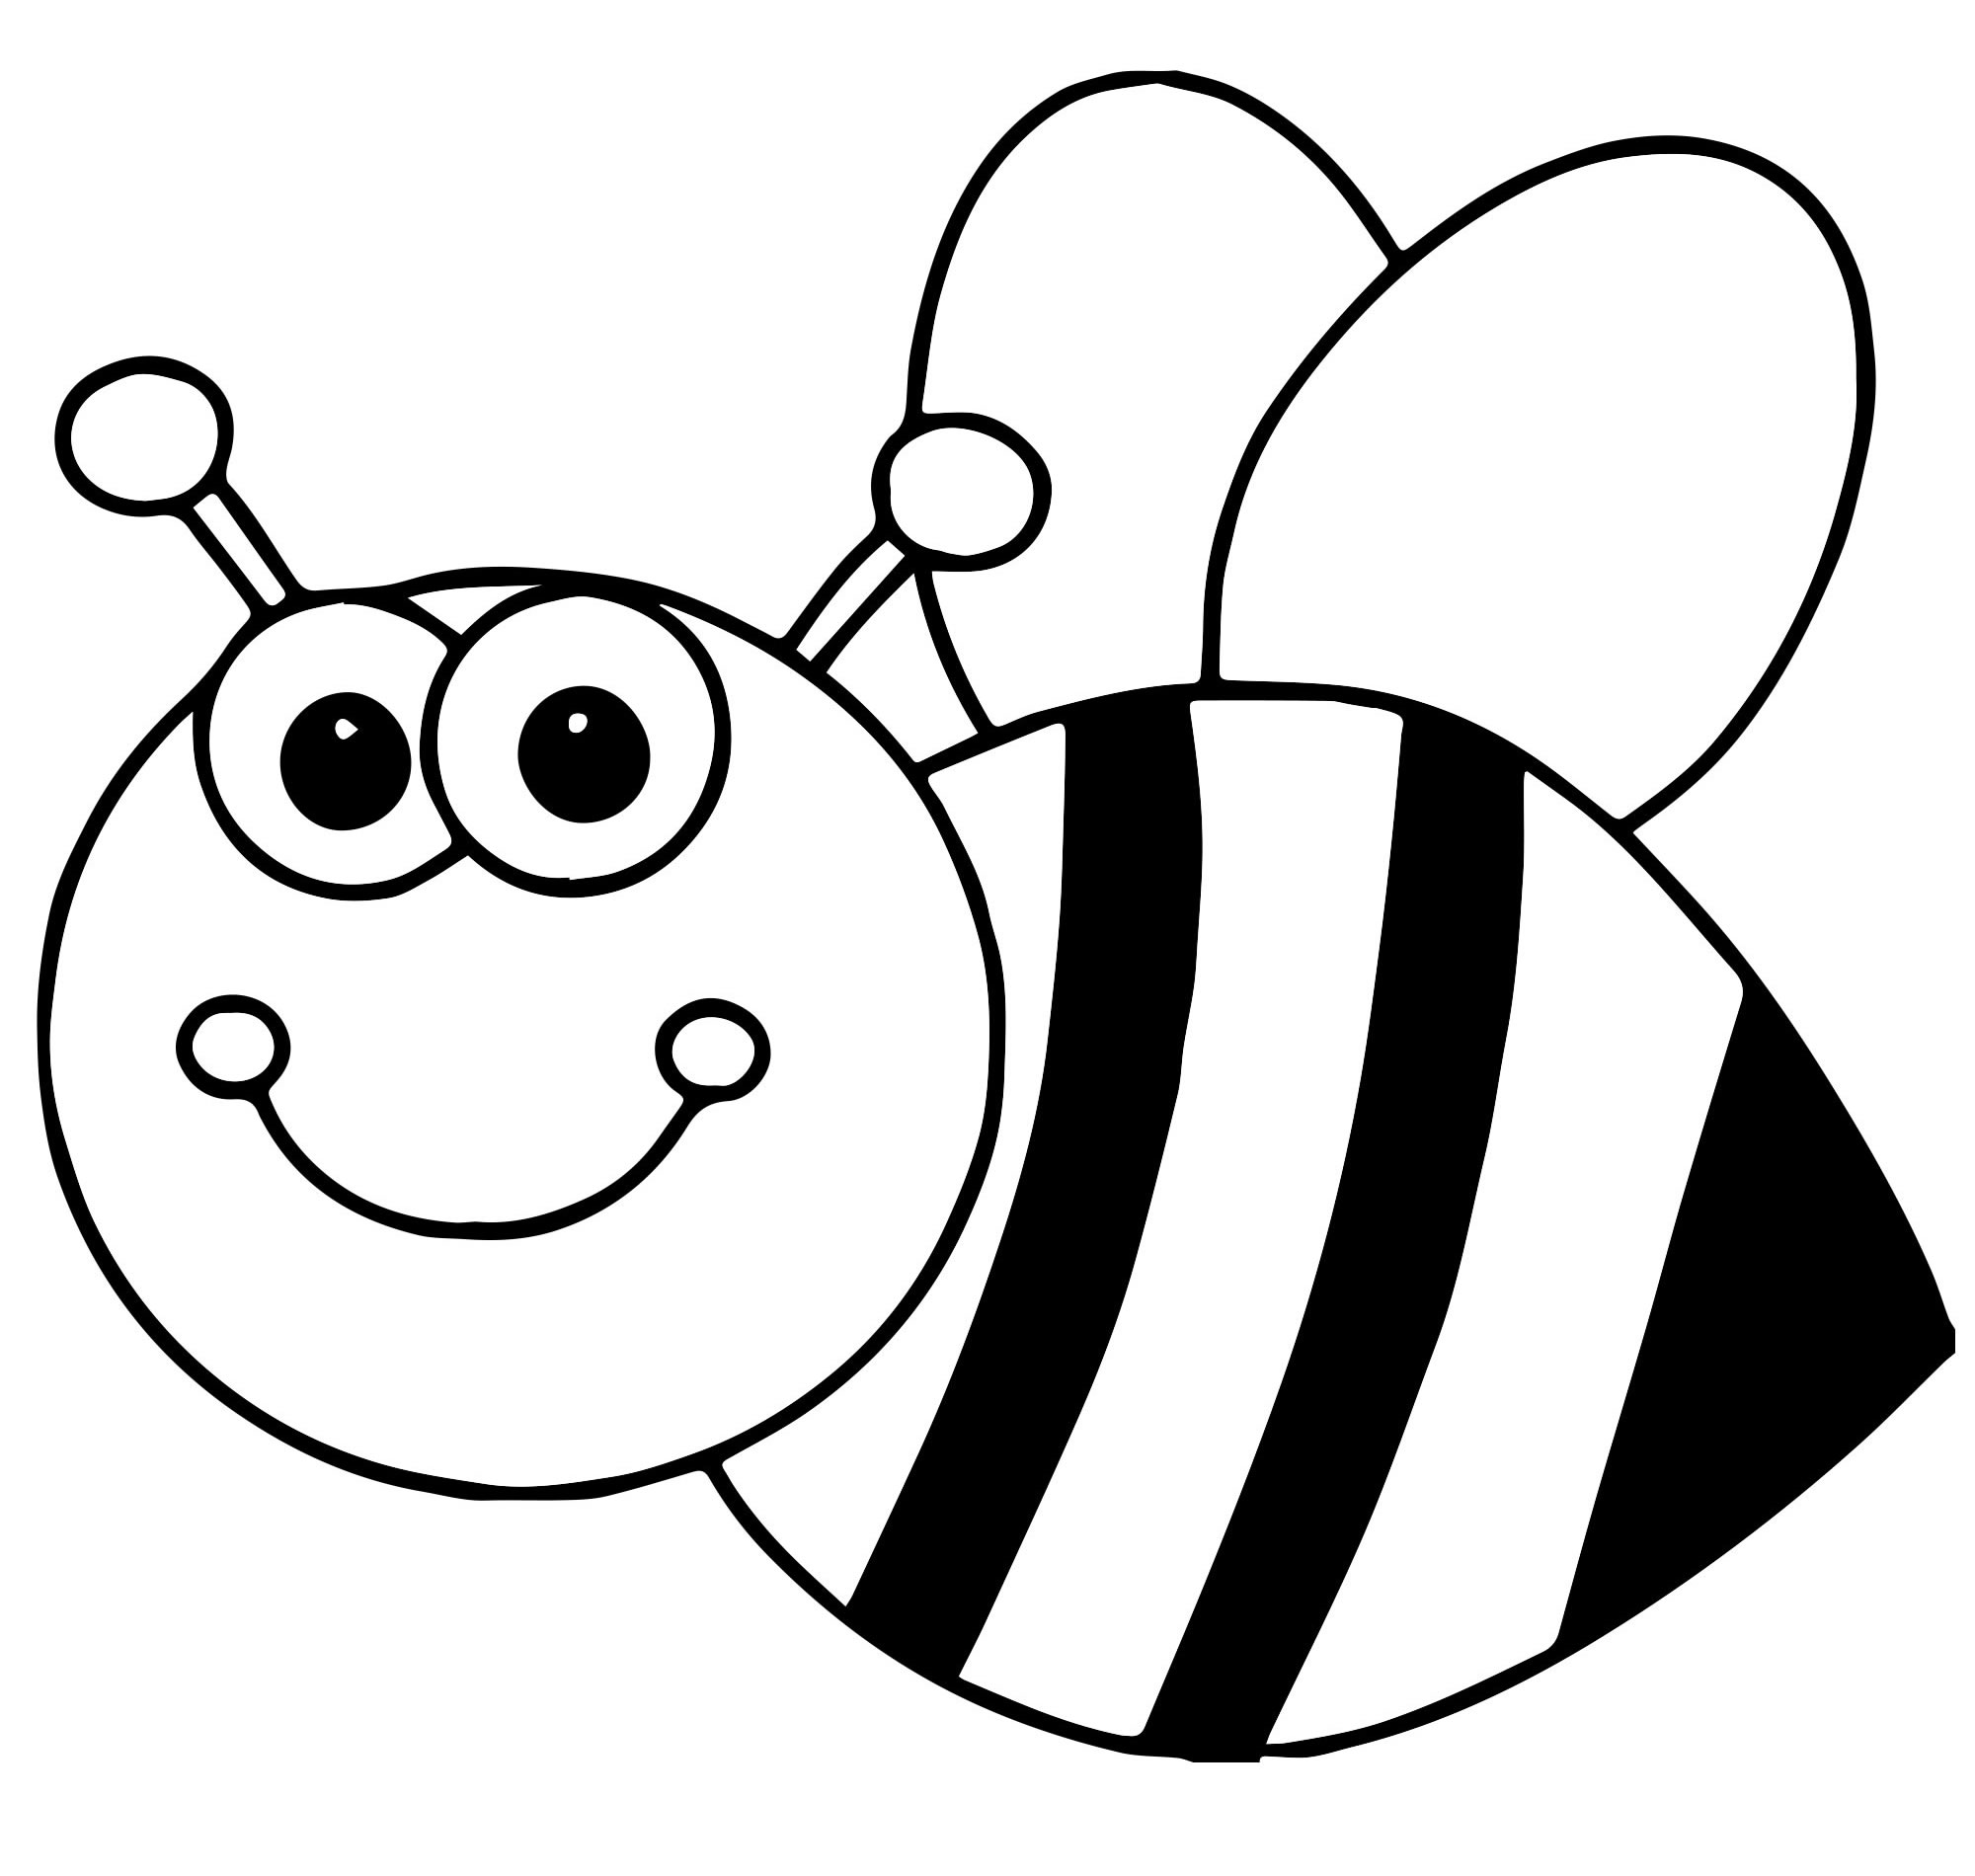 Черно белые картинки для детей раскраска. Пчела раскраска. Раскраска пчёлка для детей. Пчелка раскраска для малышей. Пчела раскраска для малышей.